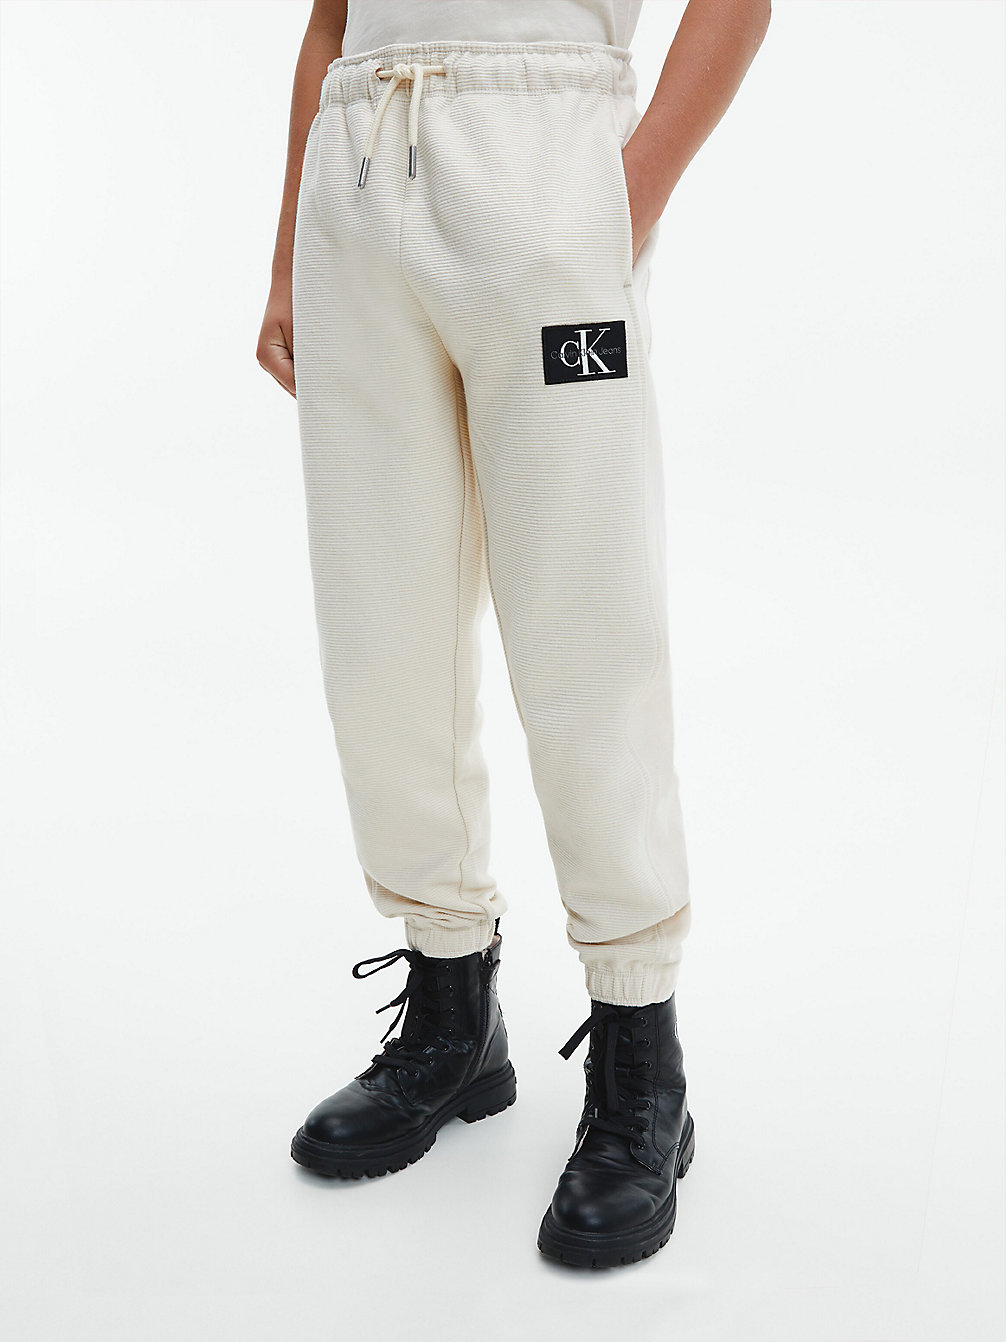 MUSLIN > Текстурированные тренировочные брюки > undefined boys - Calvin Klein